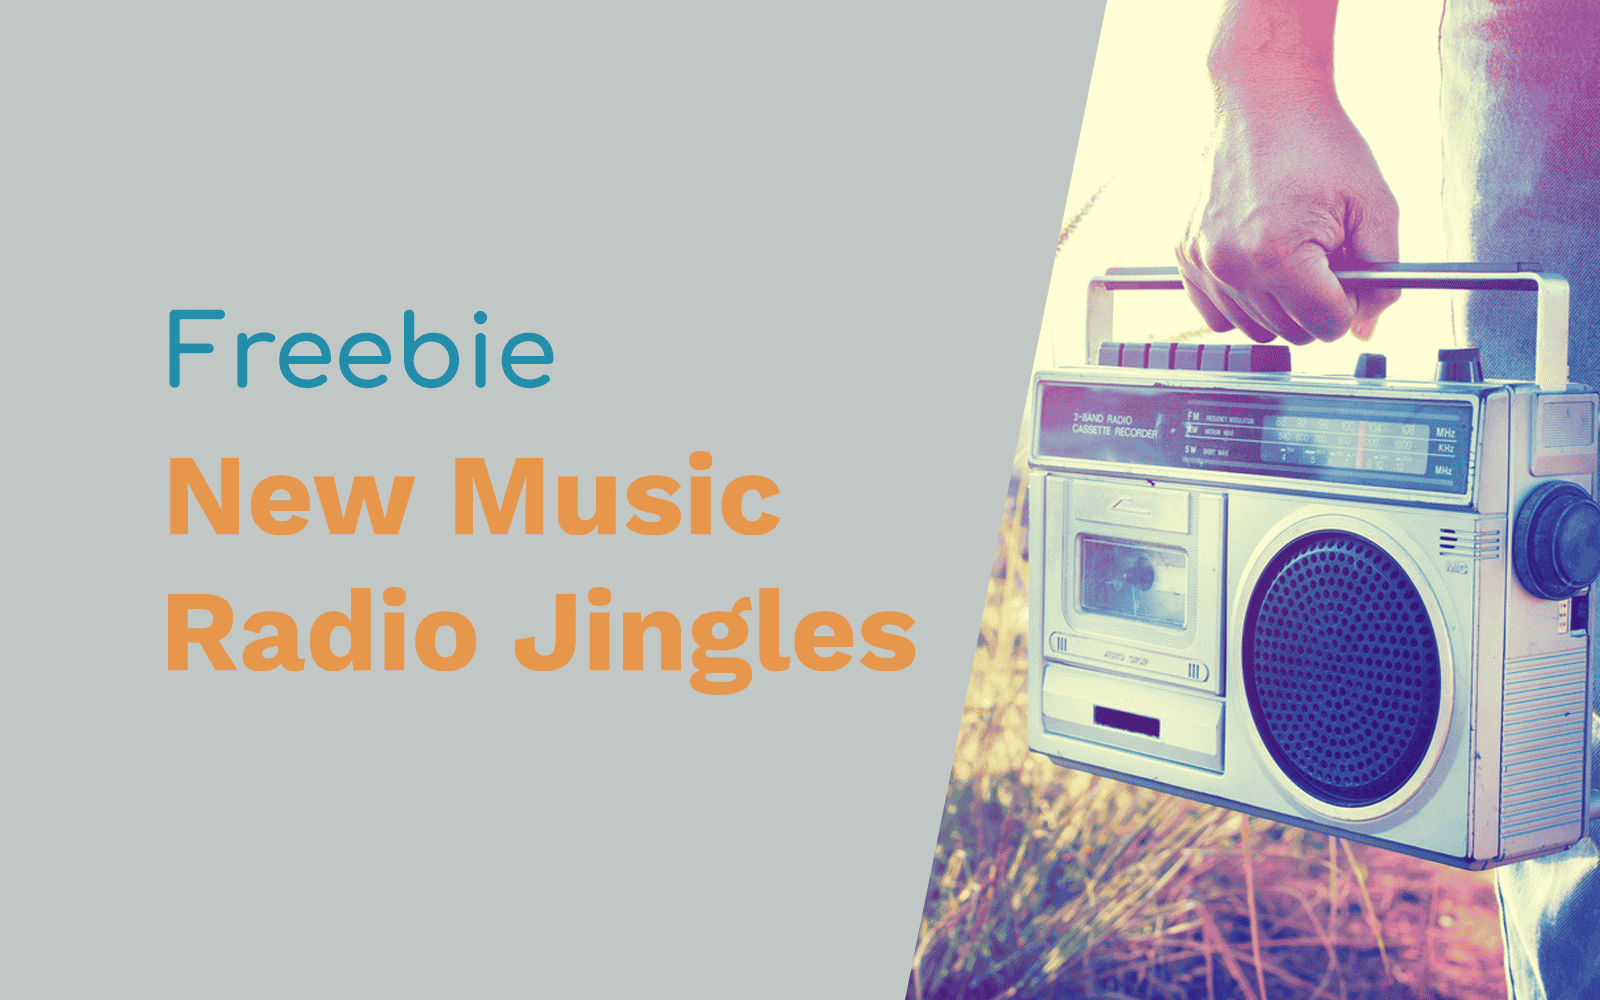 New Music Radio Jingles Free Jingles radio jingles Music Radio Creative